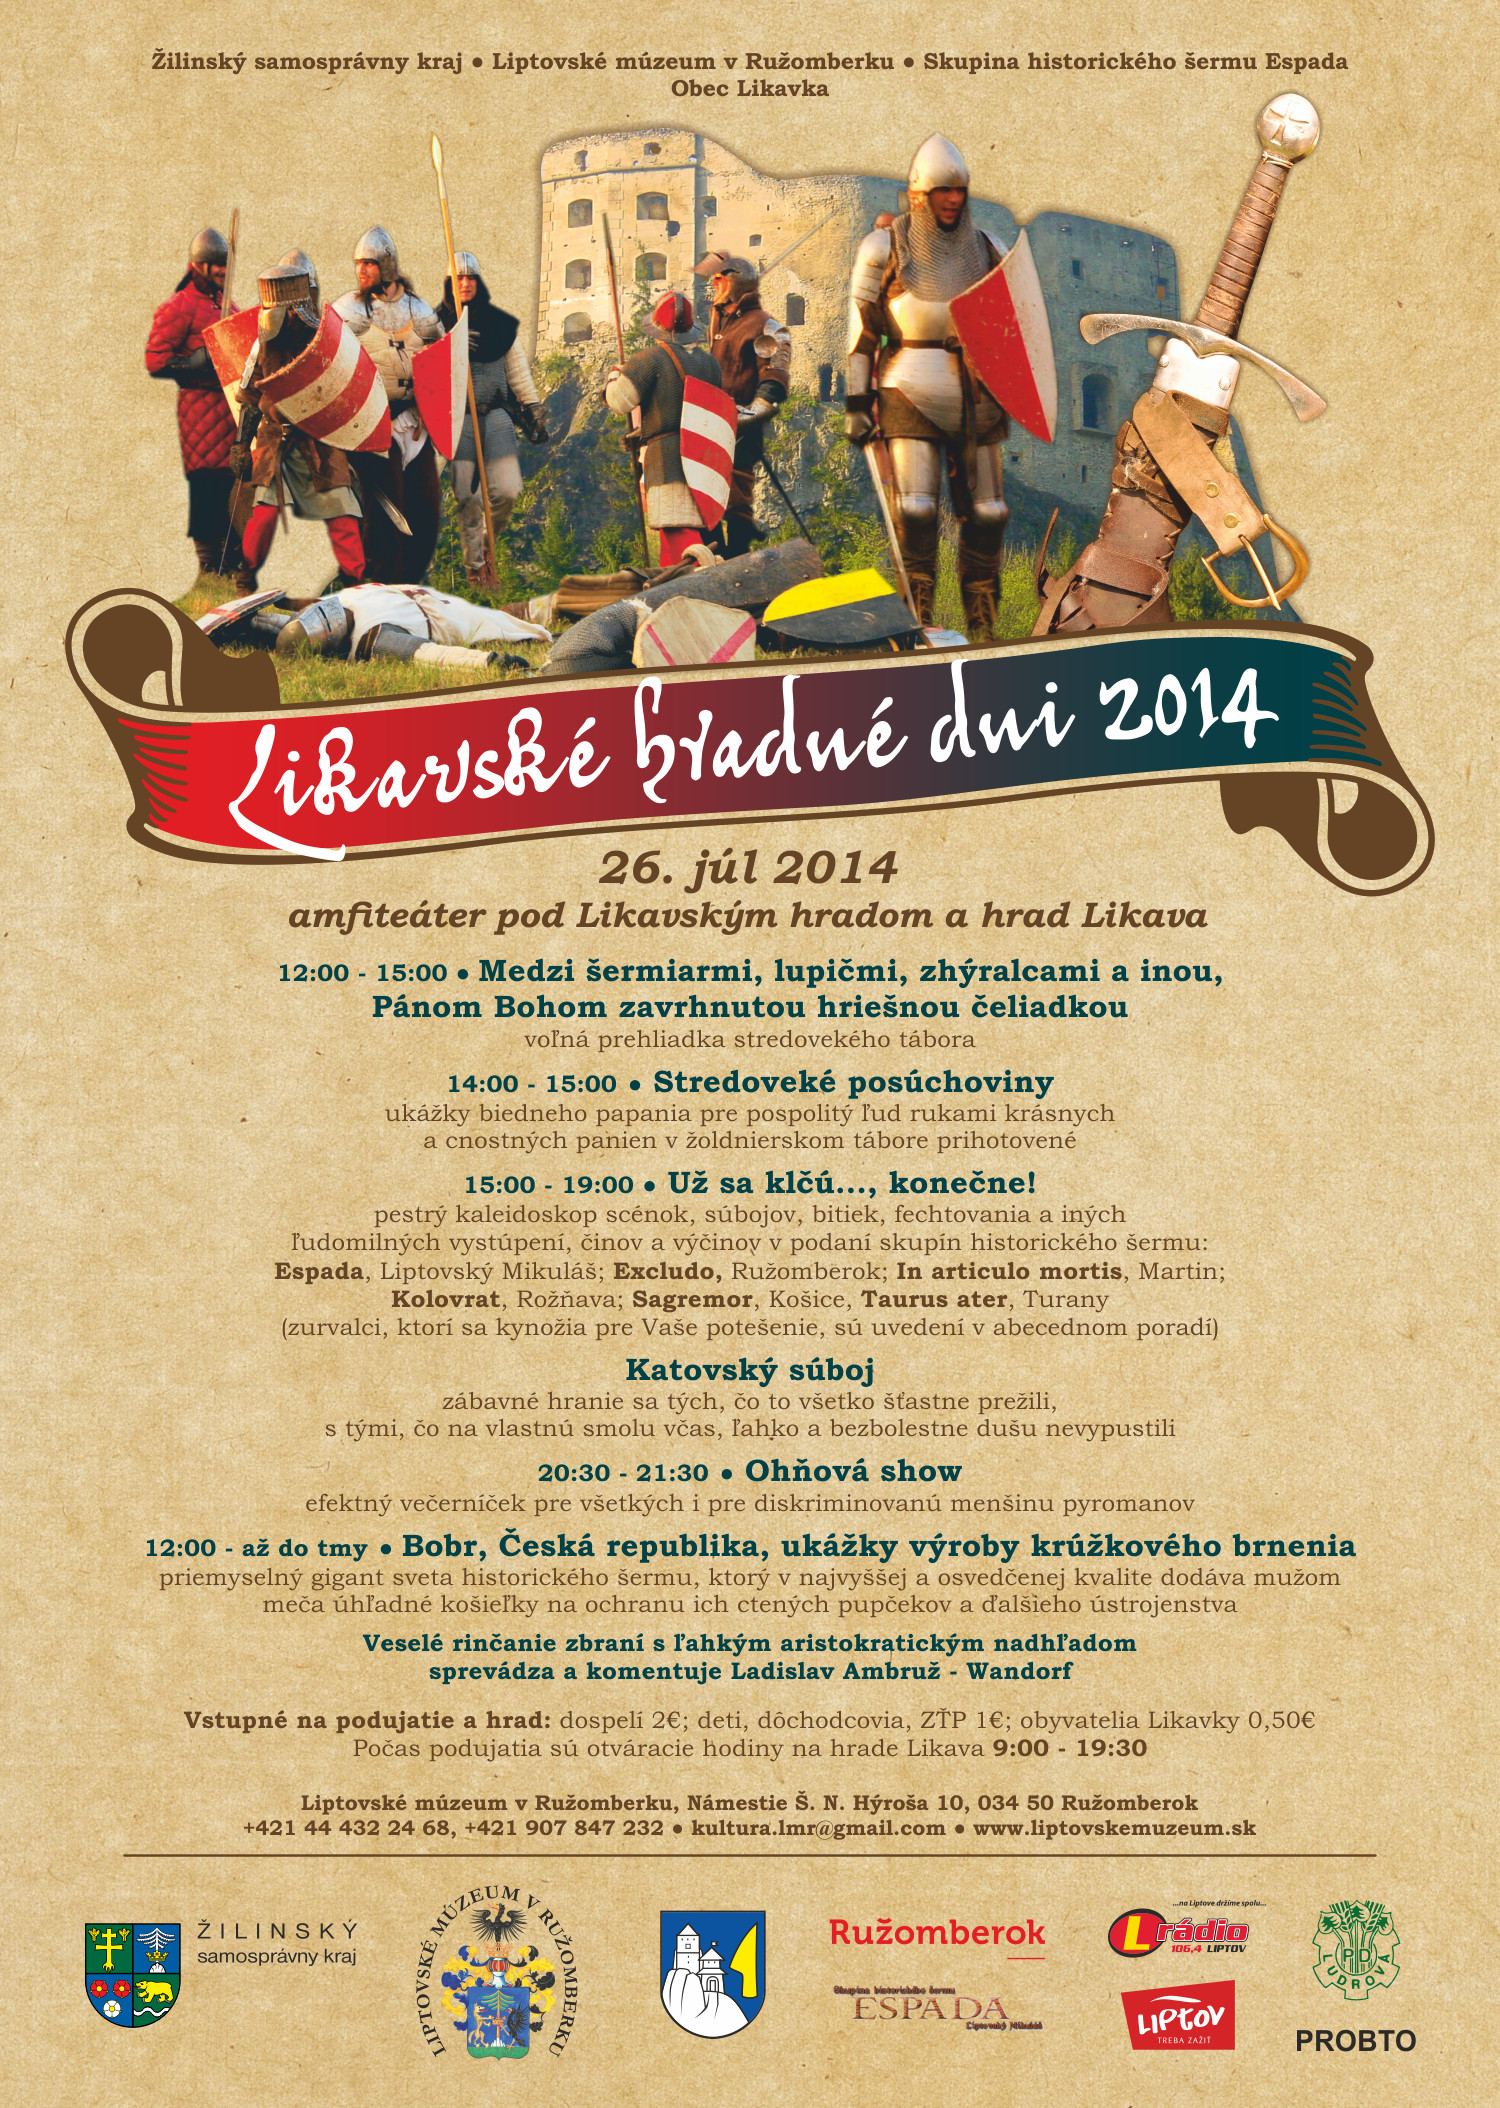 Likavsk hradn dni 2014